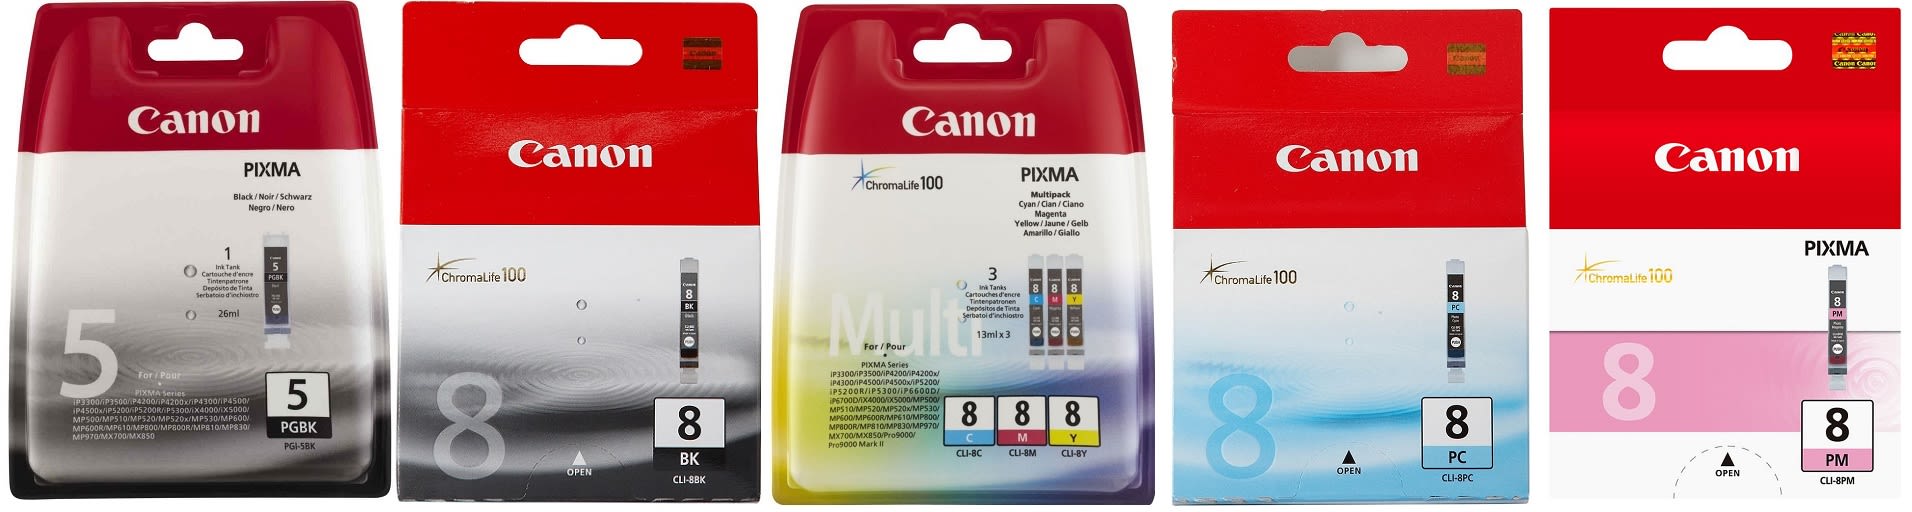 Картридж для Canon Pixma IX5000 Купить комплект оригинальных чернил.